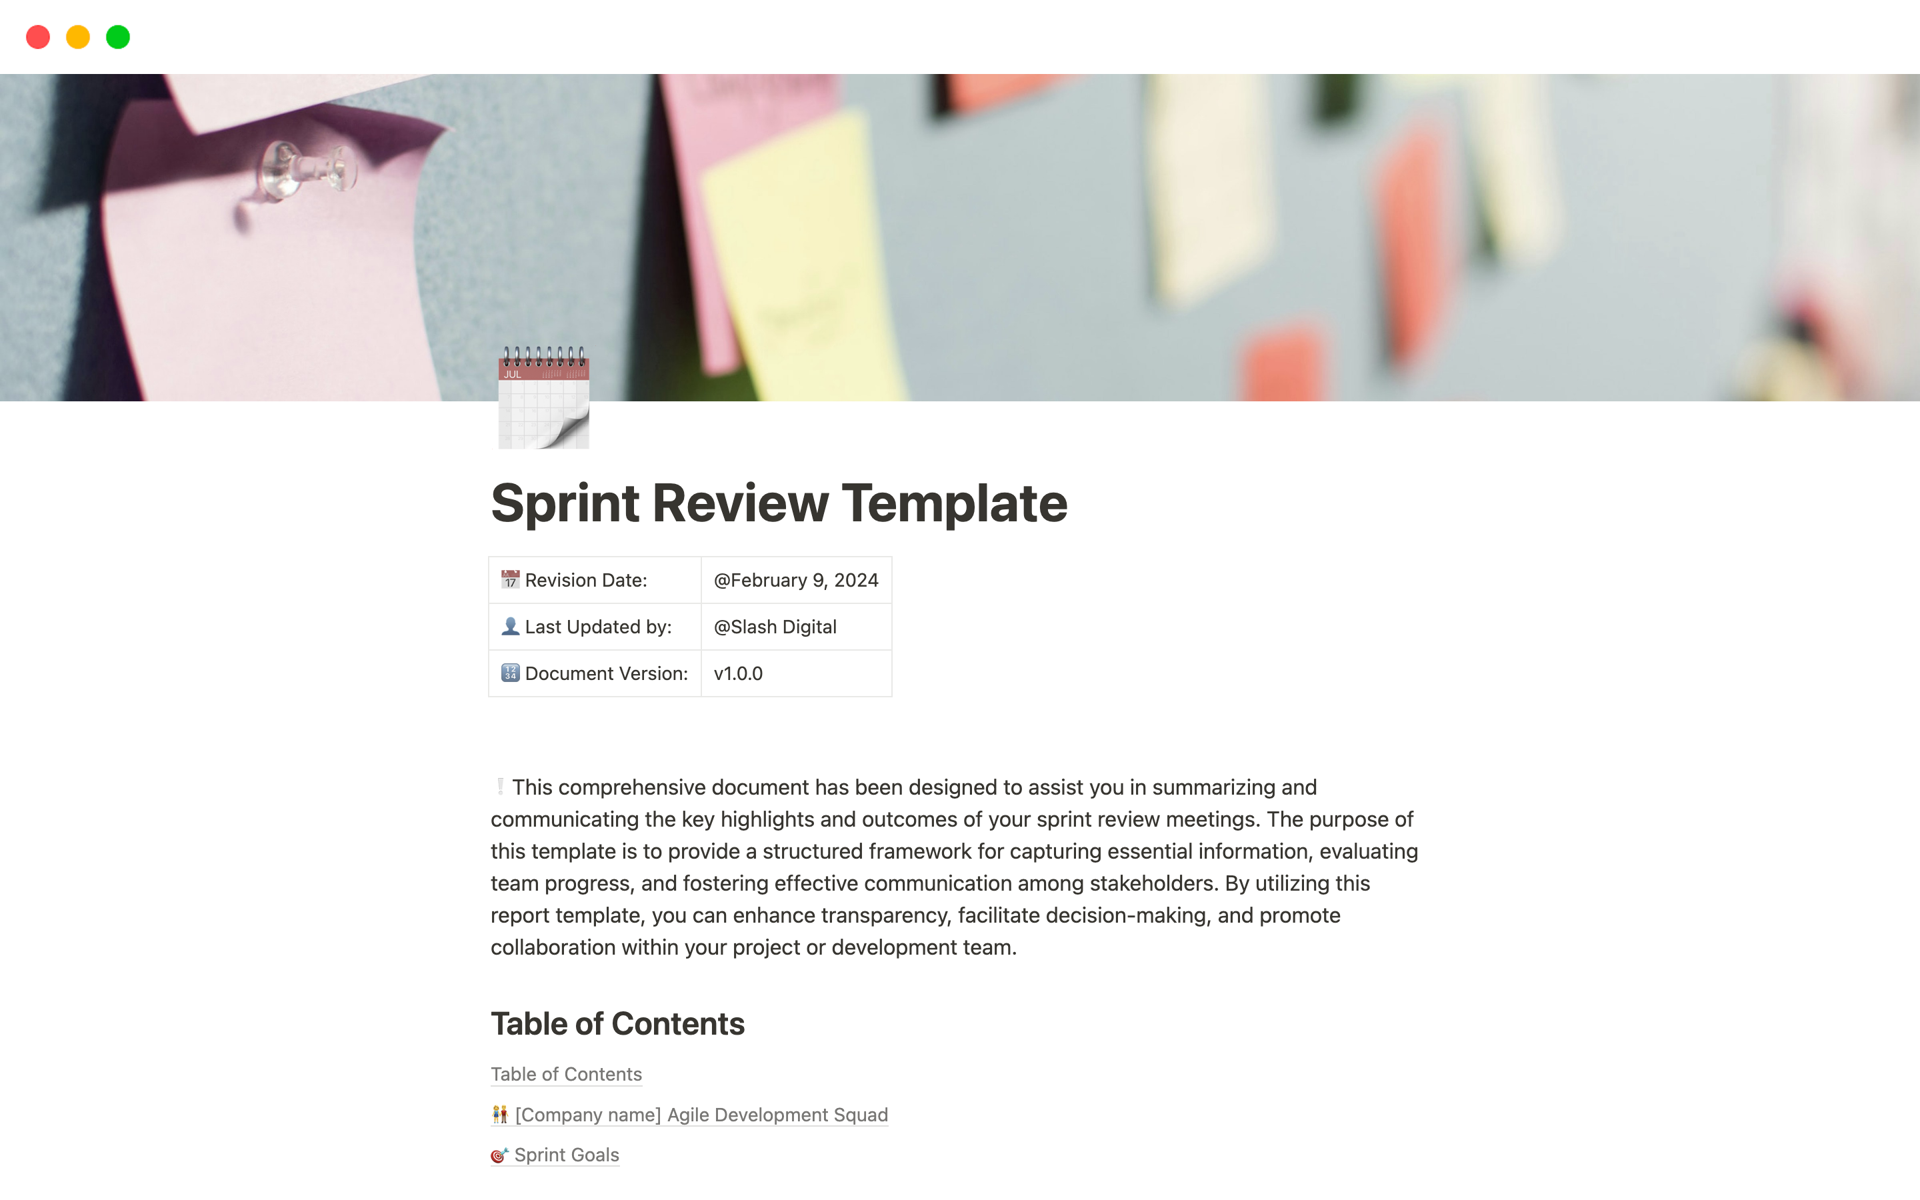 Aperçu du modèle de Sprint Review